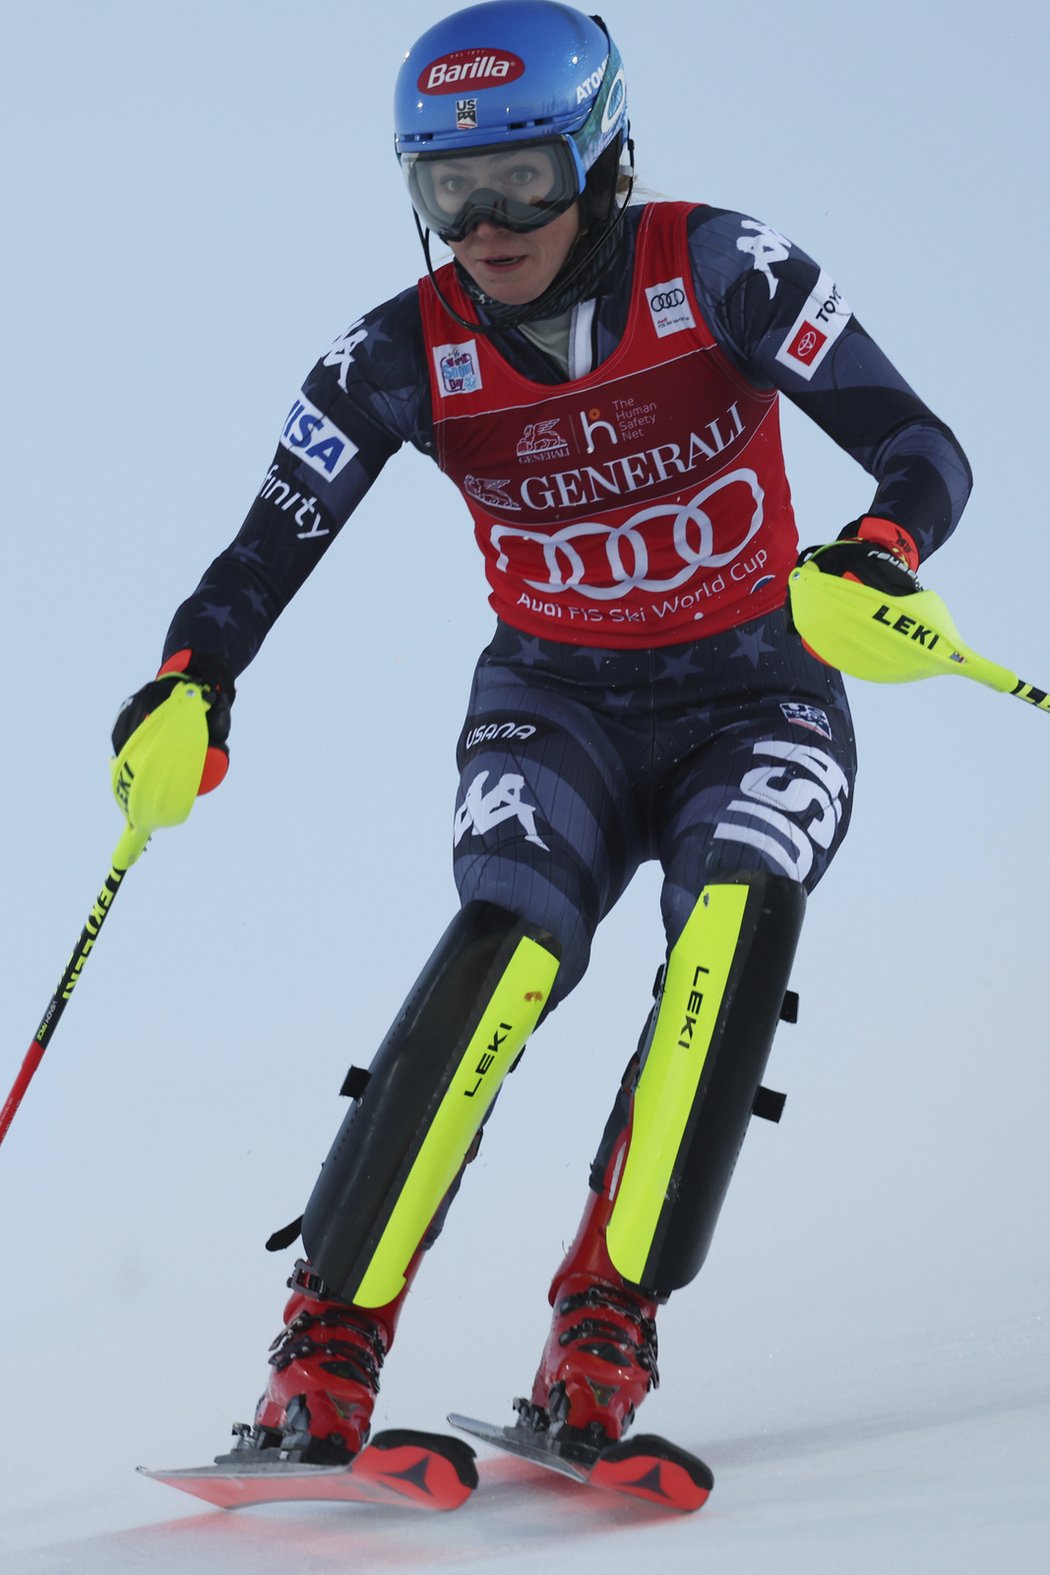 Mikaela Shiffrinová vyhrála i druhý slalom v Levi